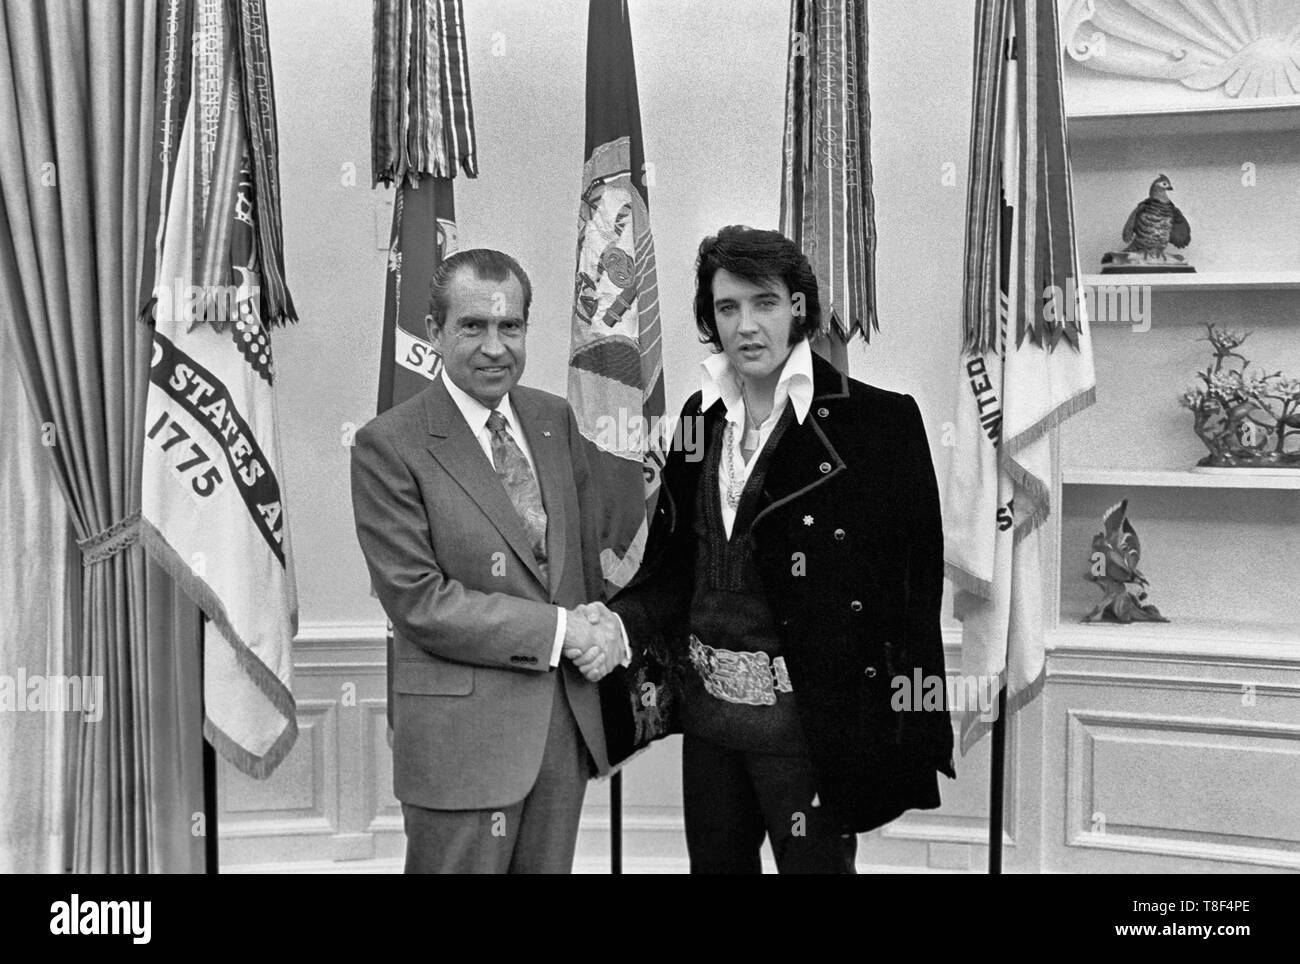 Elvis Presley Richard Nixon. El 21 de diciembre de 1970, a petición suya, Presley se reunió el entonces Presidente Richard Nixon en la Oficina Oval de la Casa Blanca. Elvis está a la derecha. Waggishly, esta imagen se dice que es "de dos grandes artistas del siglo XX". Foto de stock